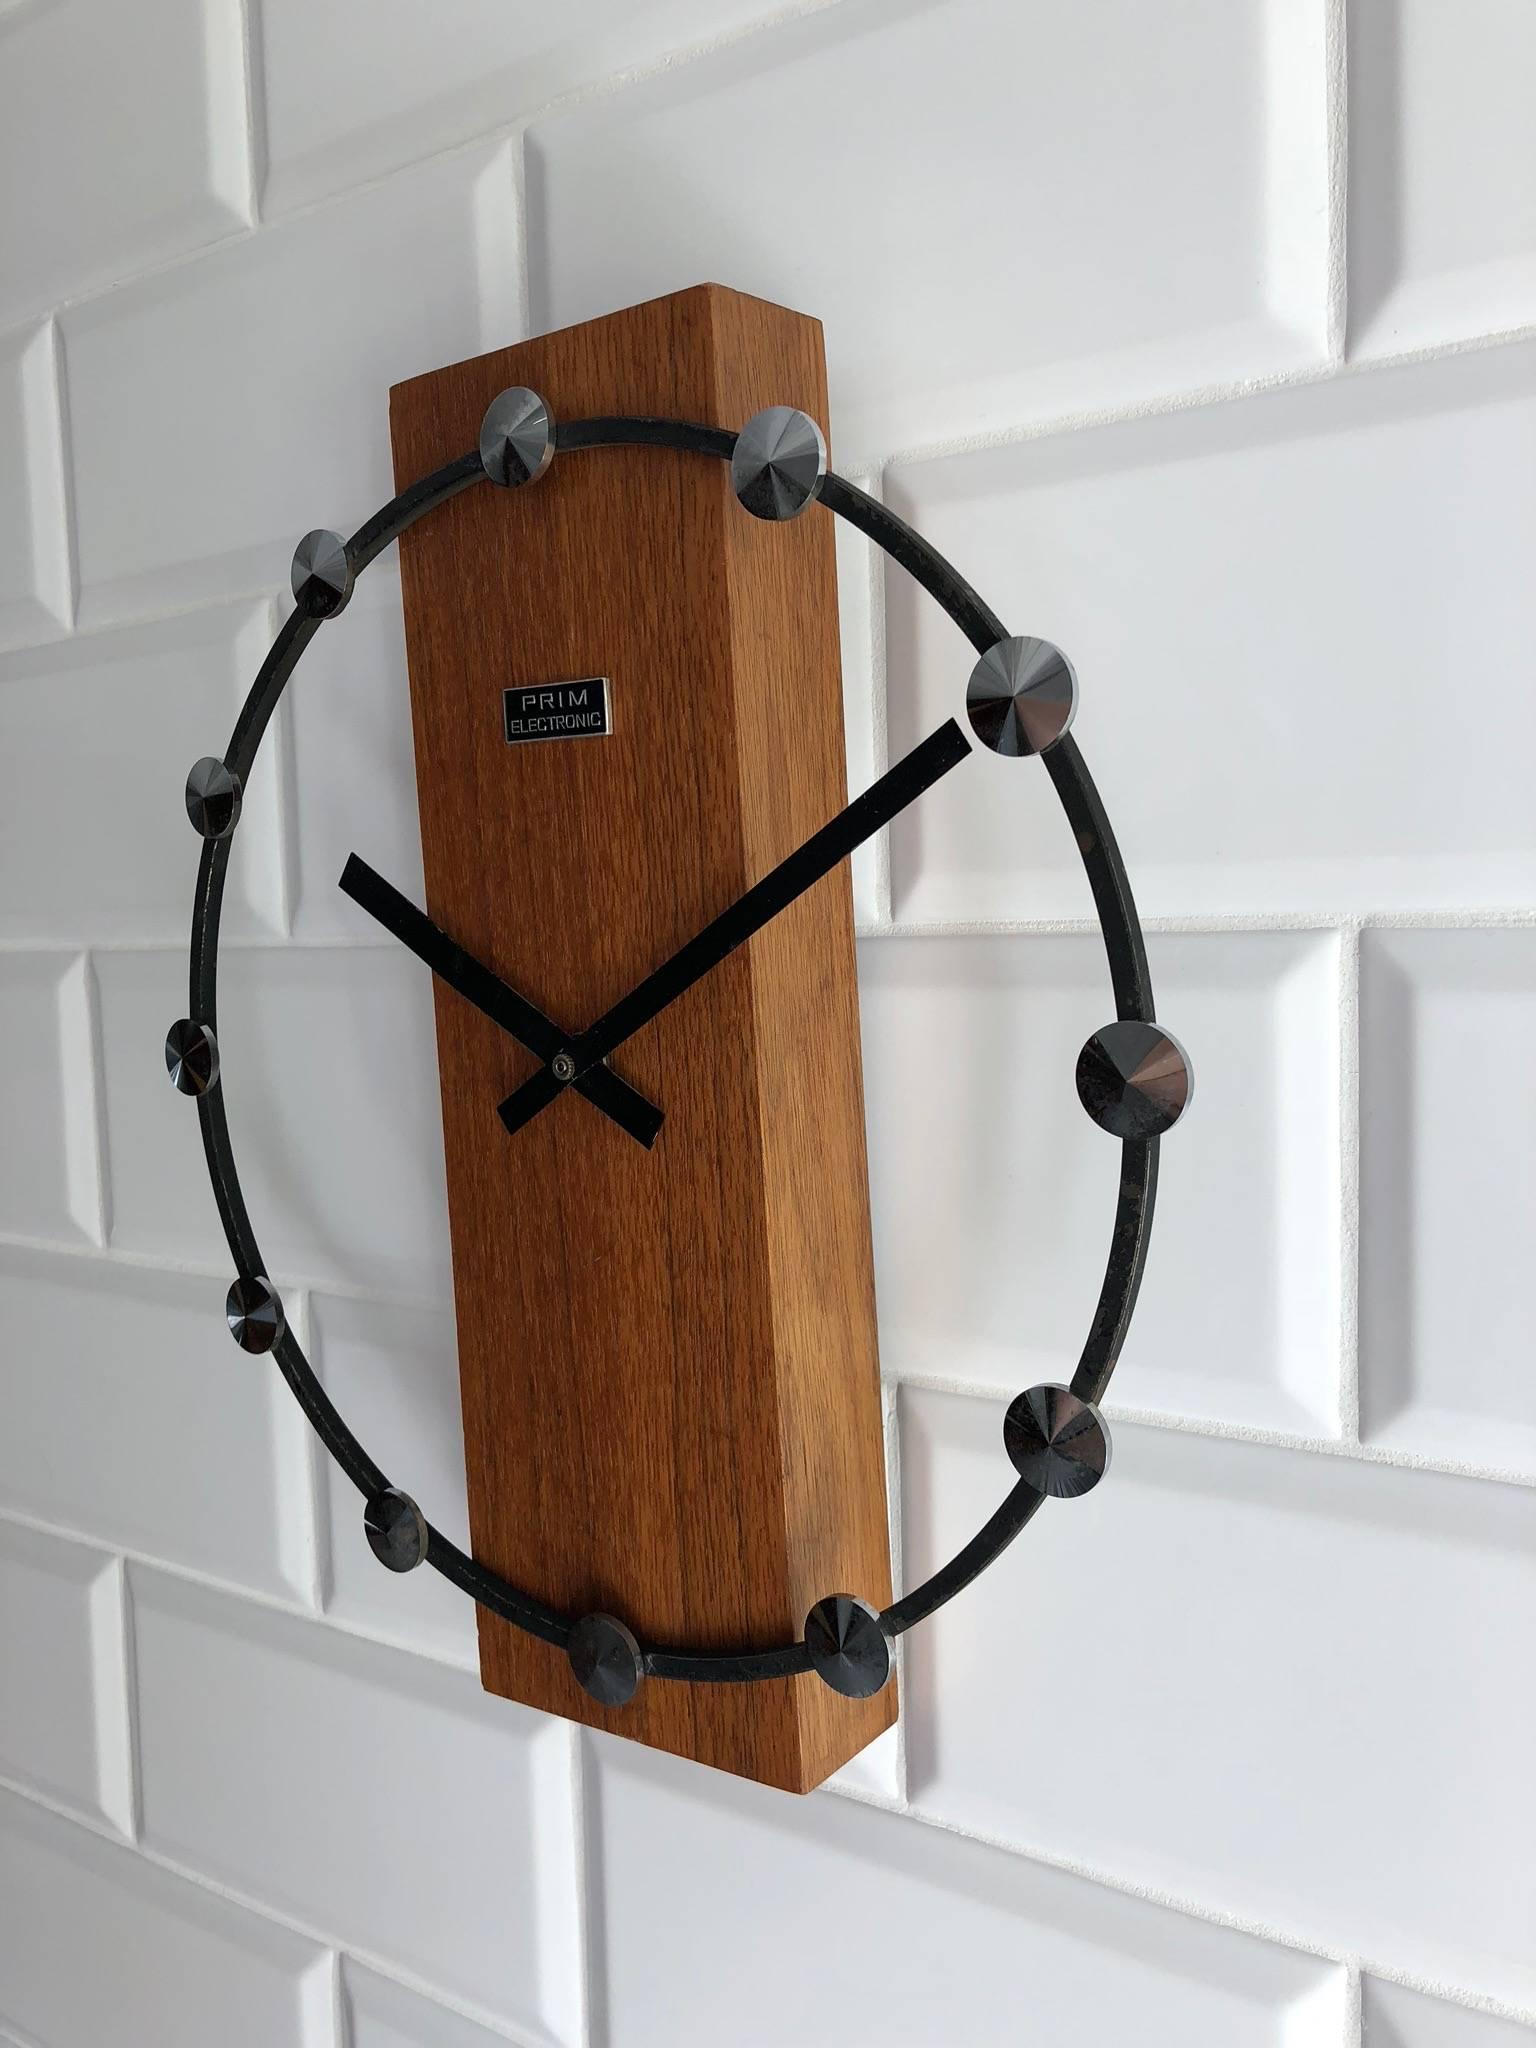 Steel Midcentury Wall Clock by Prim